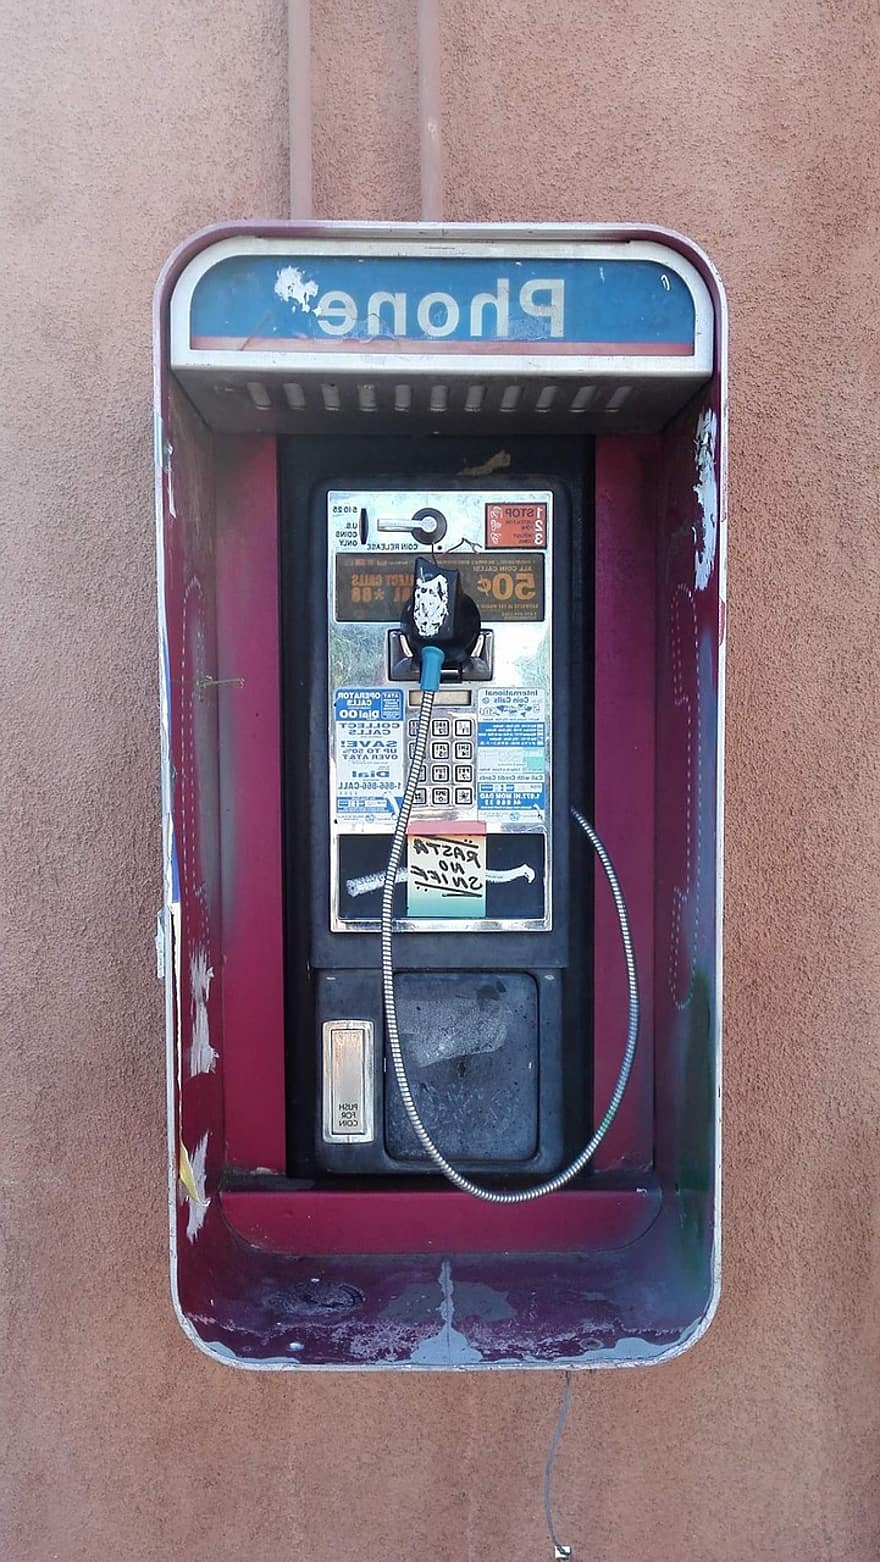 telefonní automat, telefon, sdělení, selhání, zlomený, silnice, chata, kornet, vlákno, nepoužitelný